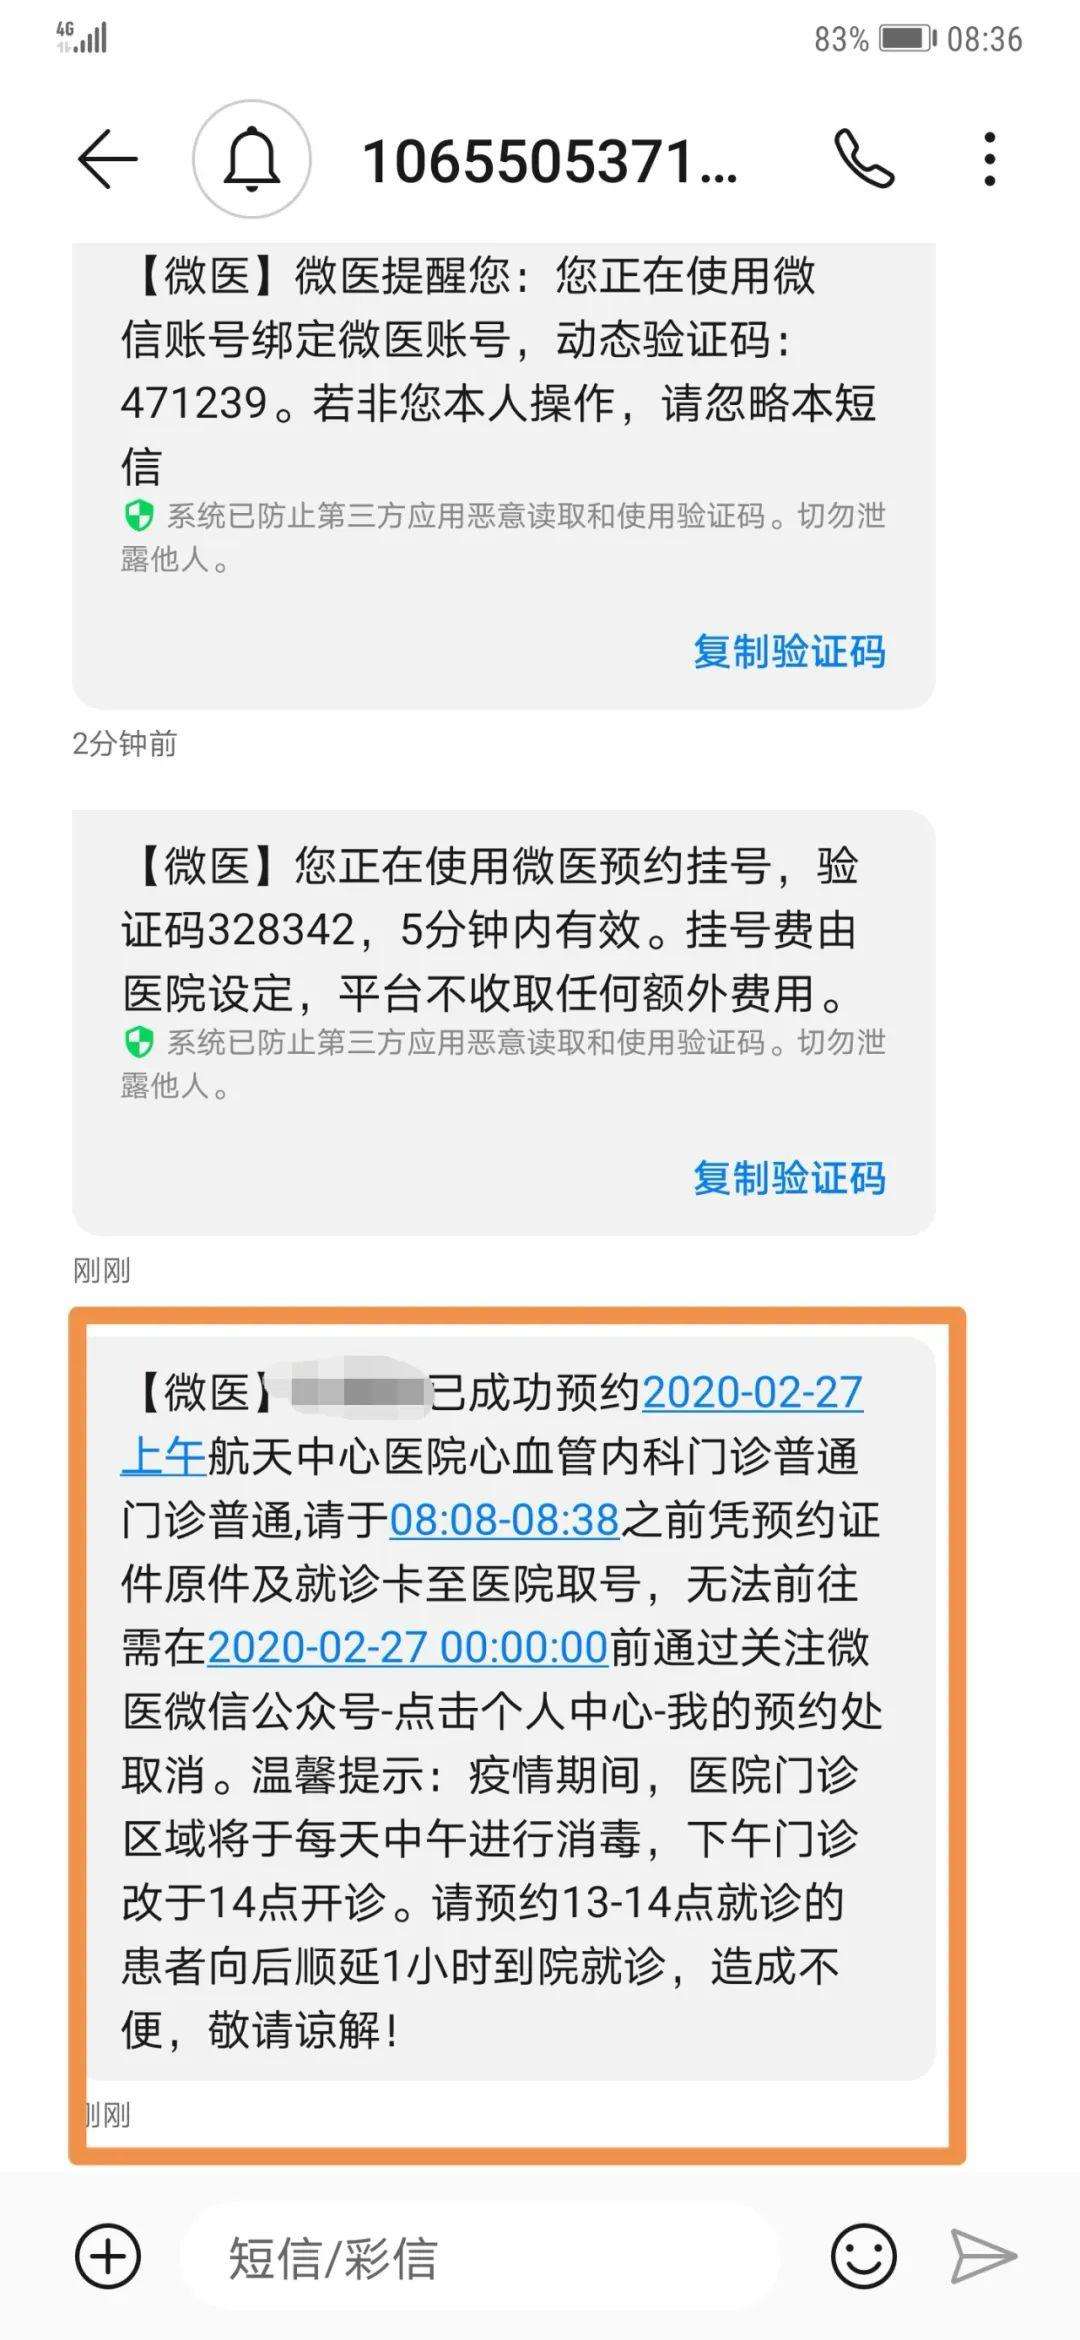 包含北京中医药大学东方医院网上预约挂号，预约成功再收费的词条